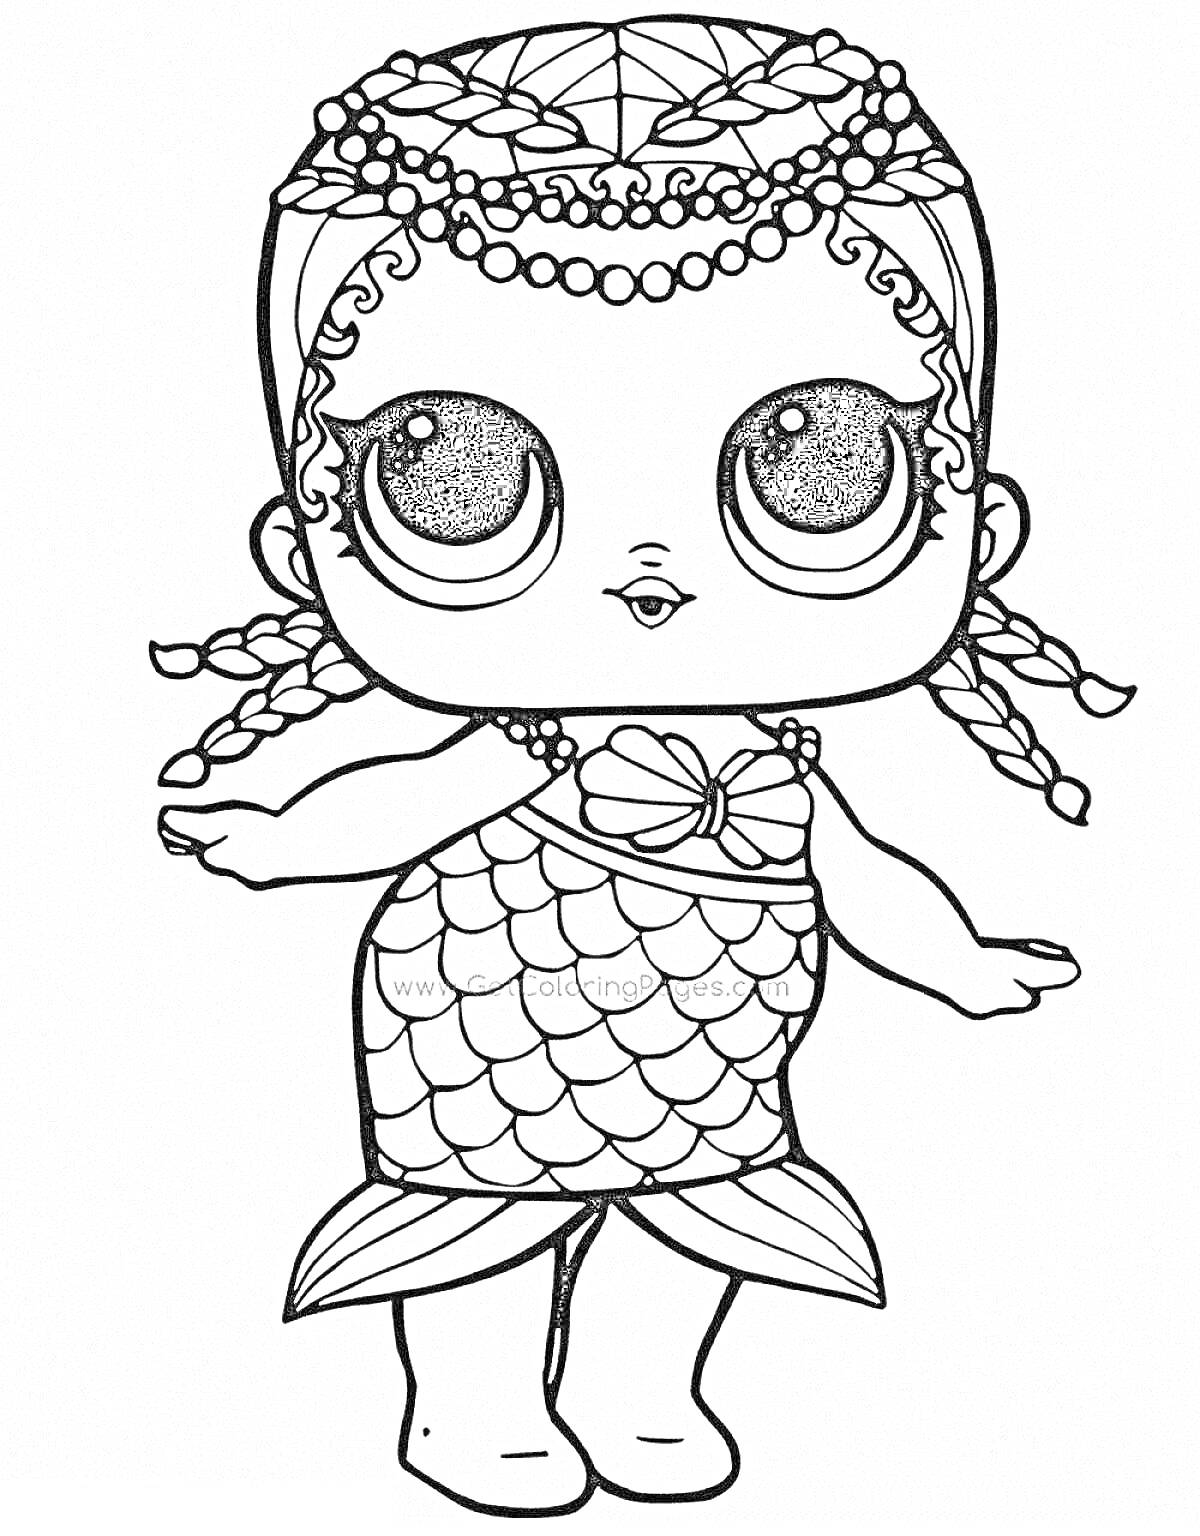 Раскраска Кукла Лол в виде русалки с плавником и украшением из бисера